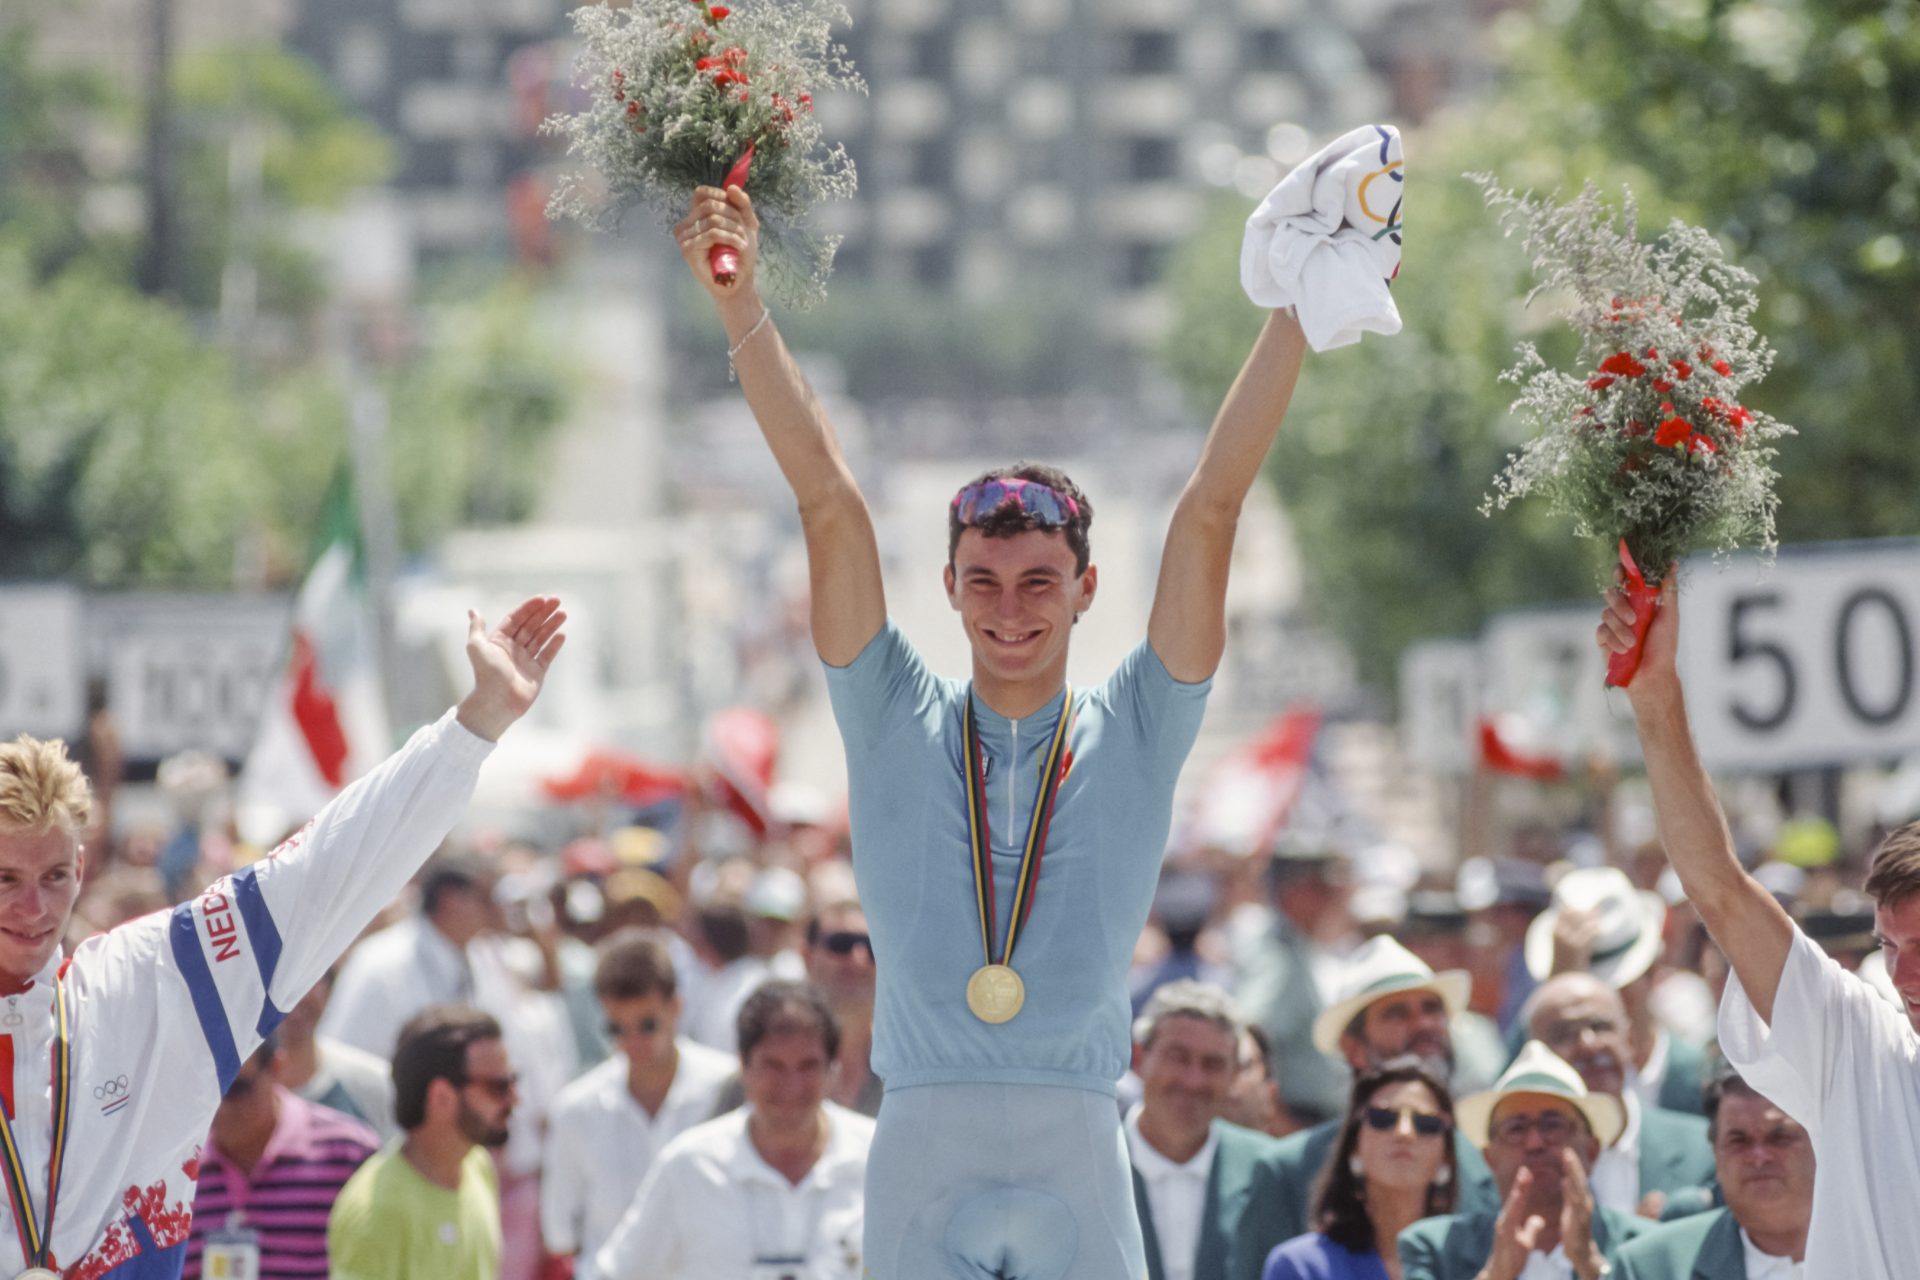 La tragica storia di Fabio Casartelli, il campione morto nel '95 dopo una caduta di gruppo al Tour de France